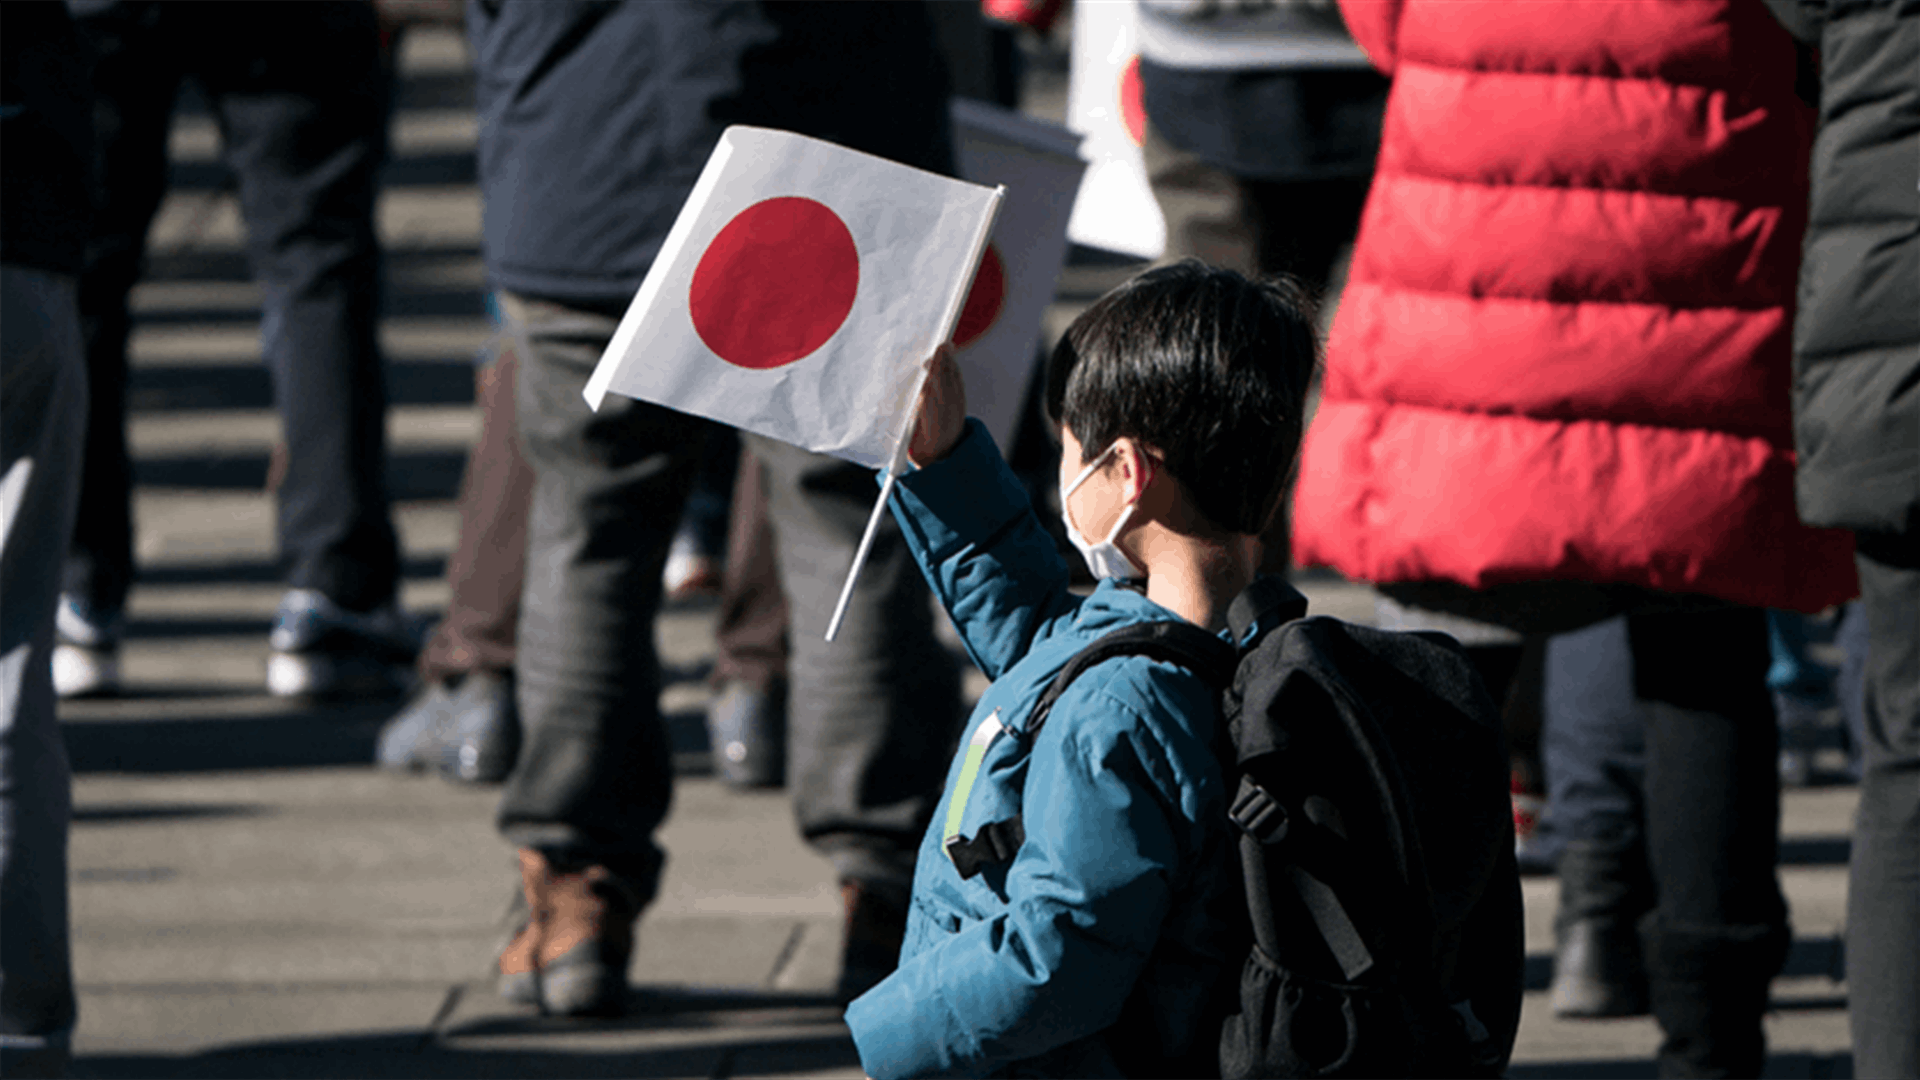 اليابان تحفزّ العائلات على مغادرة طوكيو مقابل هذا المبلغ الضخم!